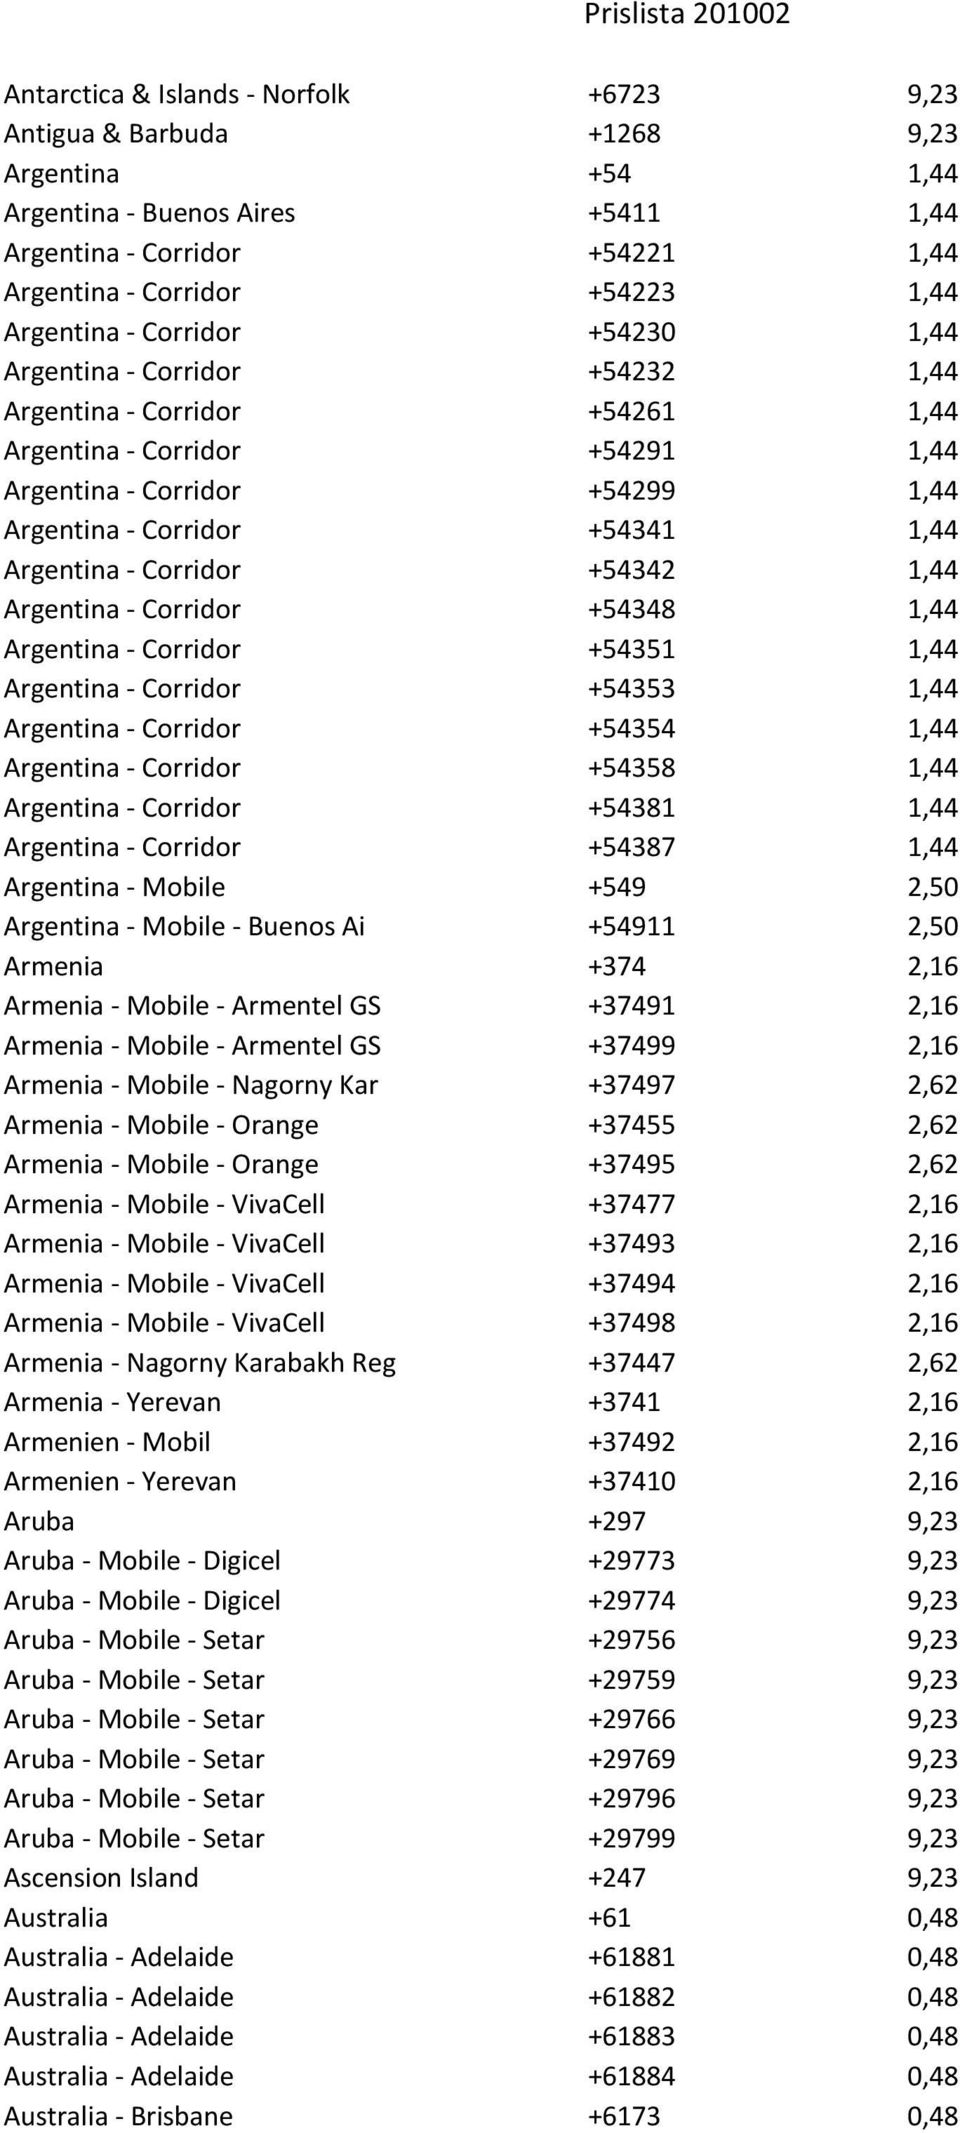 Argentina - Corridor +54342 1,44 Argentina - Corridor +54348 1,44 Argentina - Corridor +54351 1,44 Argentina - Corridor +54353 1,44 Argentina - Corridor +54354 1,44 Argentina - Corridor +54358 1,44